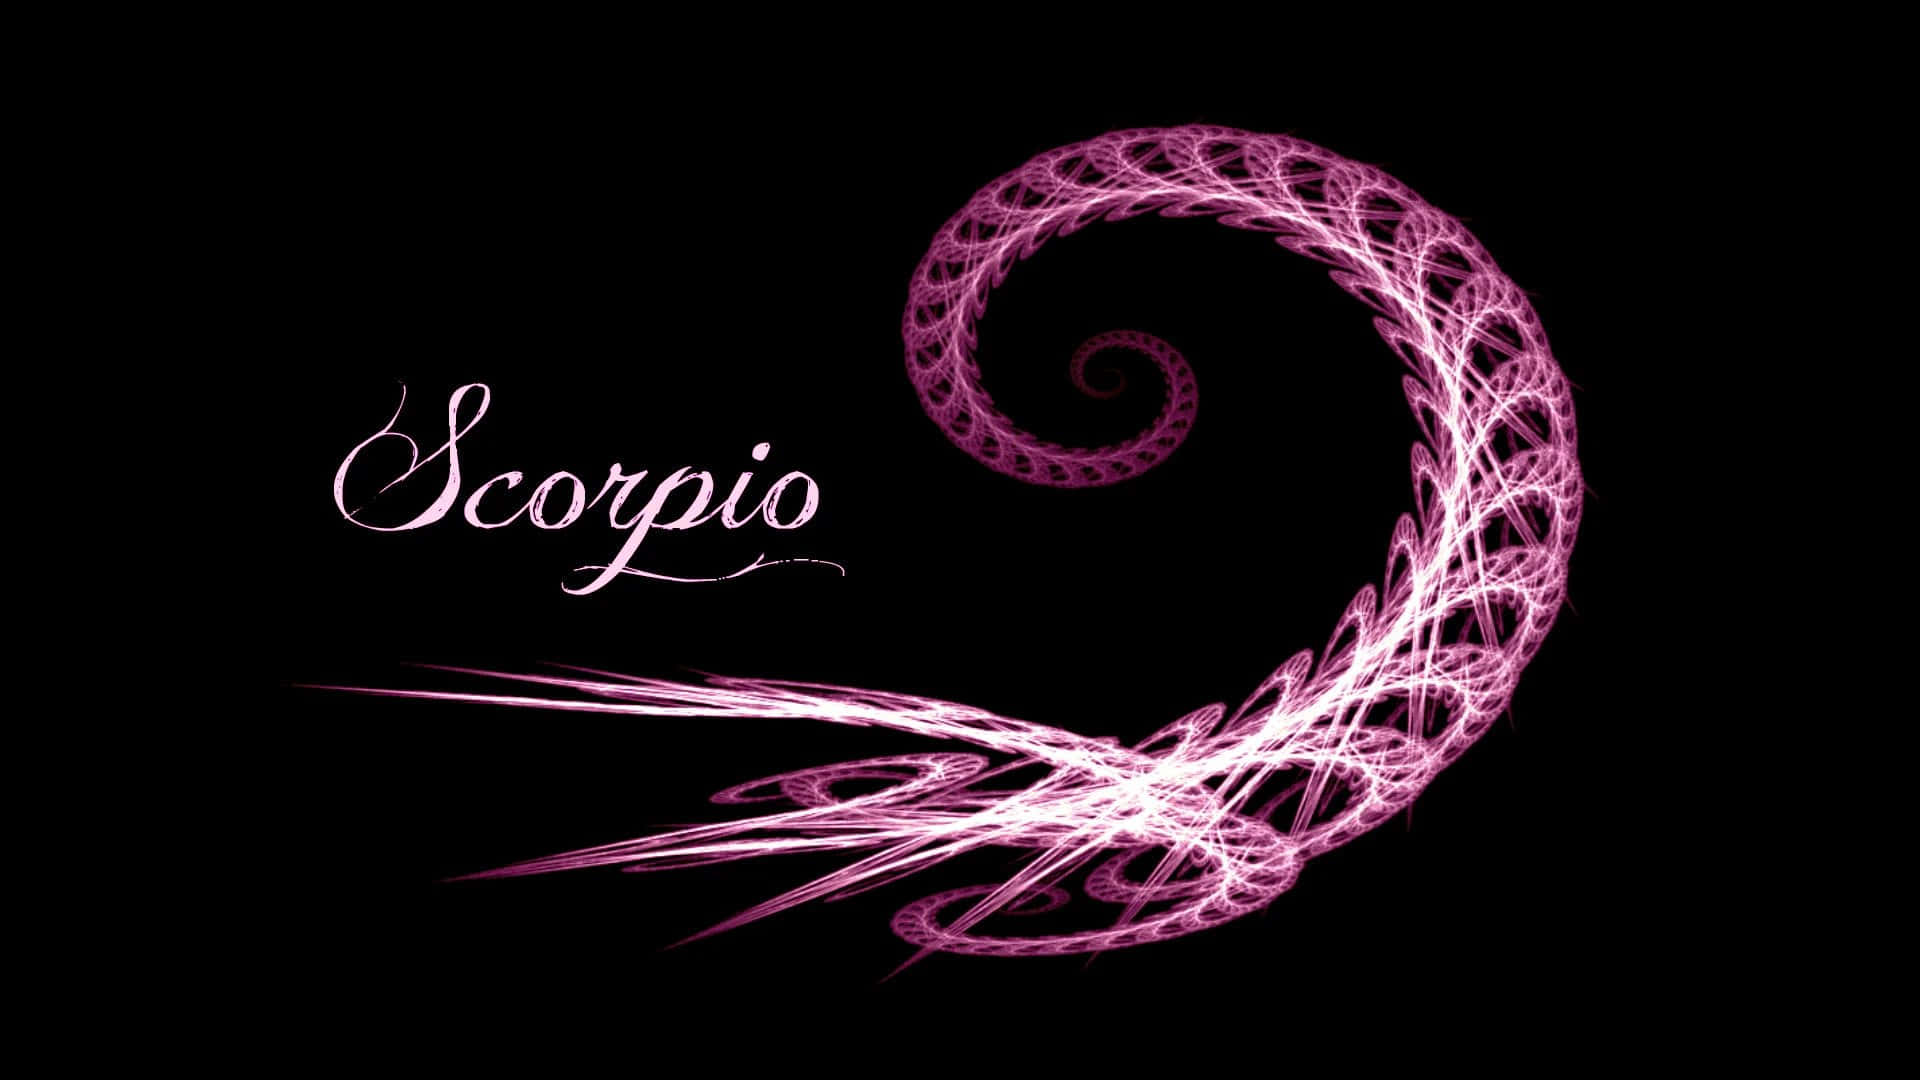 Scorpio Symbol of Passionate Strength